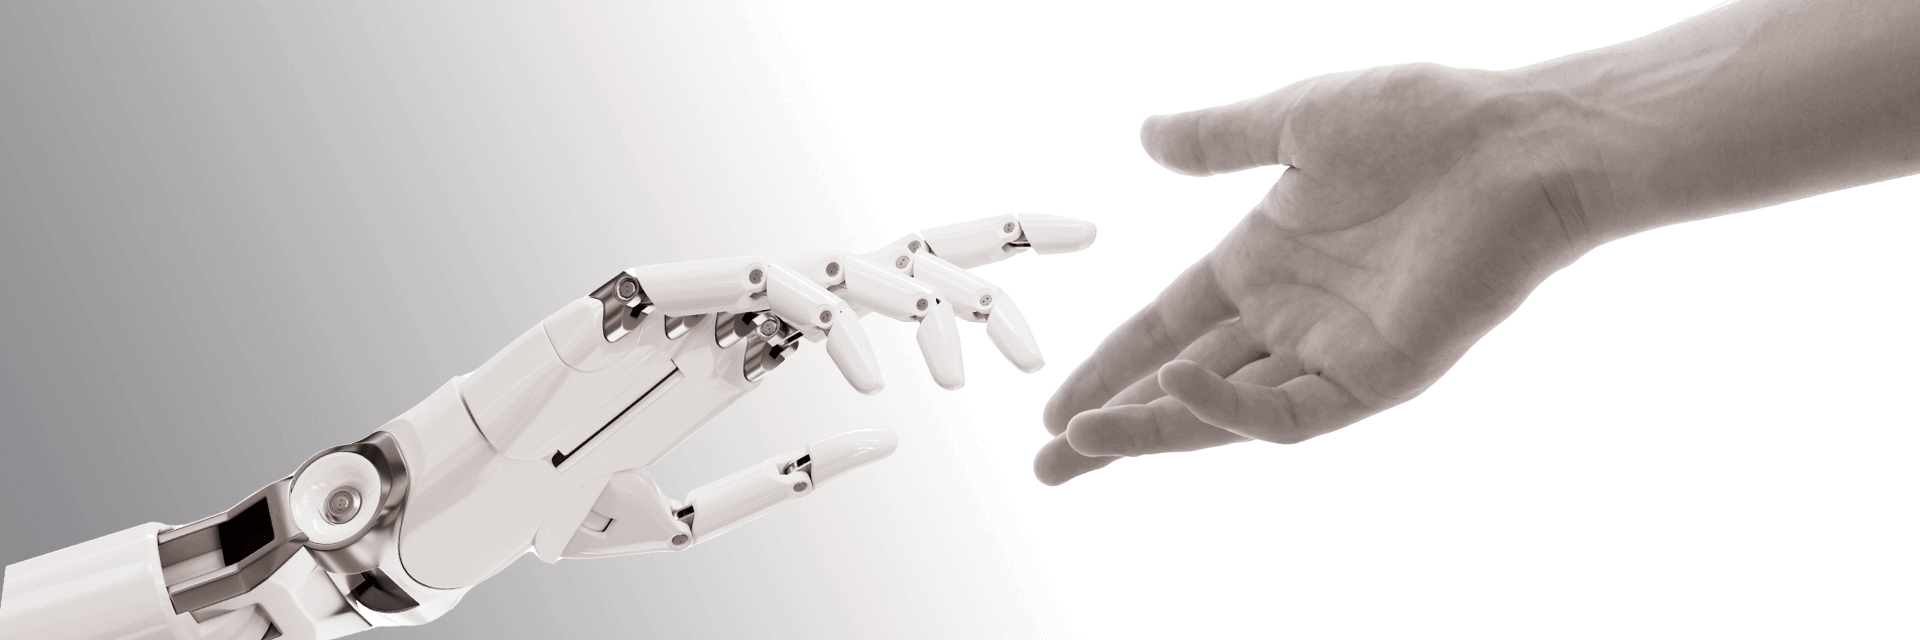 Roboterhand und Menschenhand greifen nacheinander